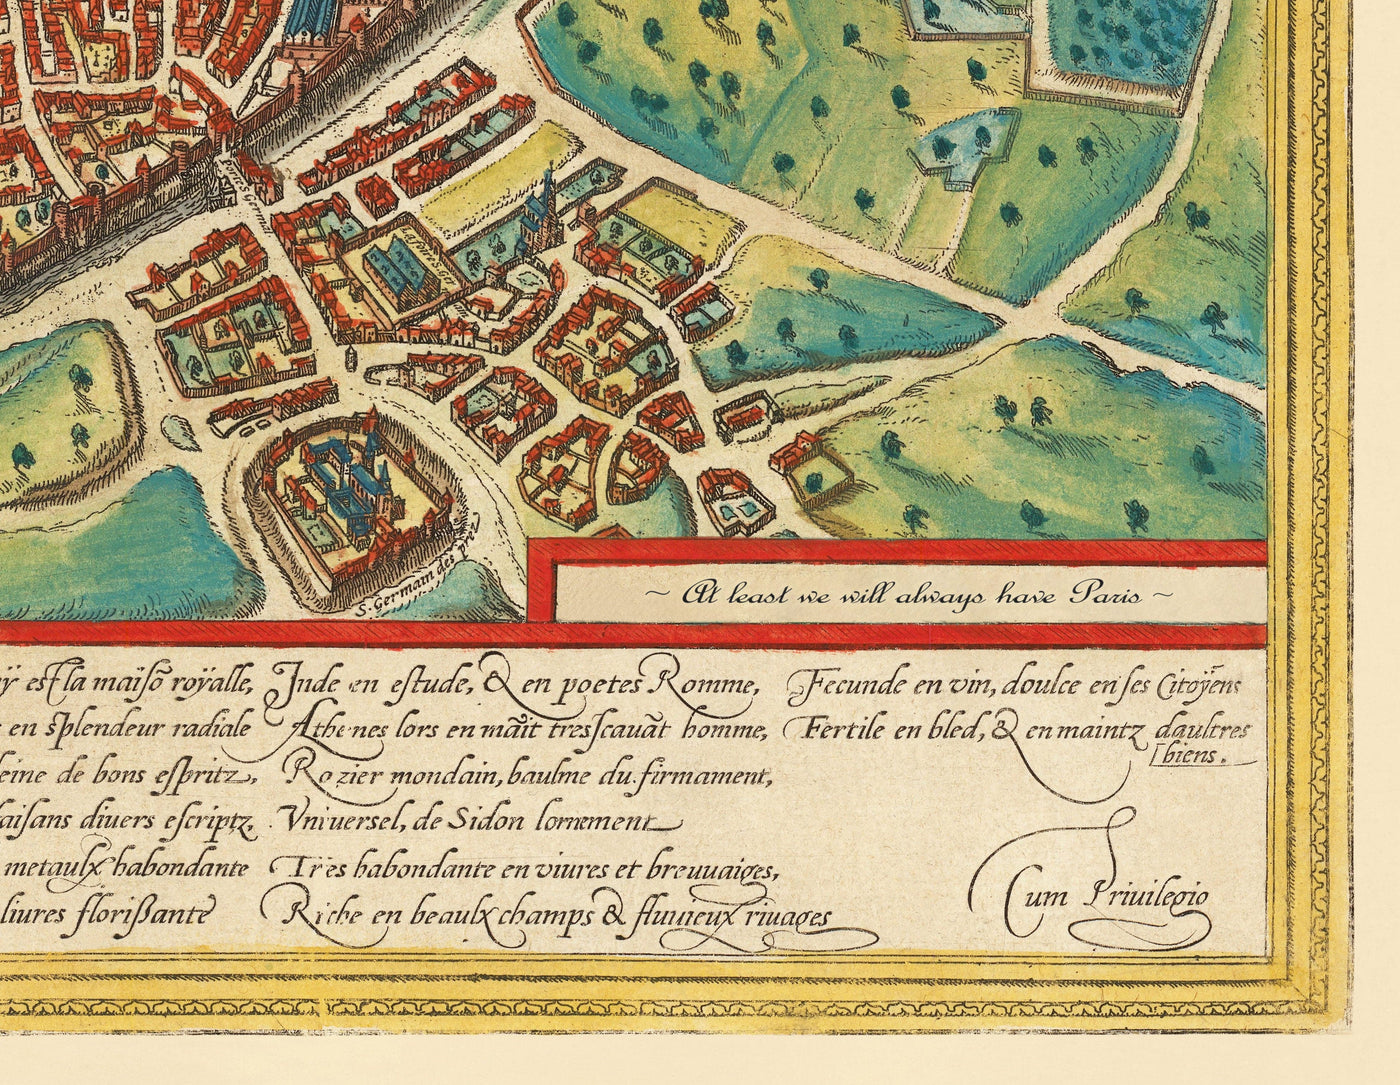 Alte Karte von Edinburgh, 1580 von Georg Braun - Burg, Stadtmauern, St. Giles Kathedrale, Altstadt